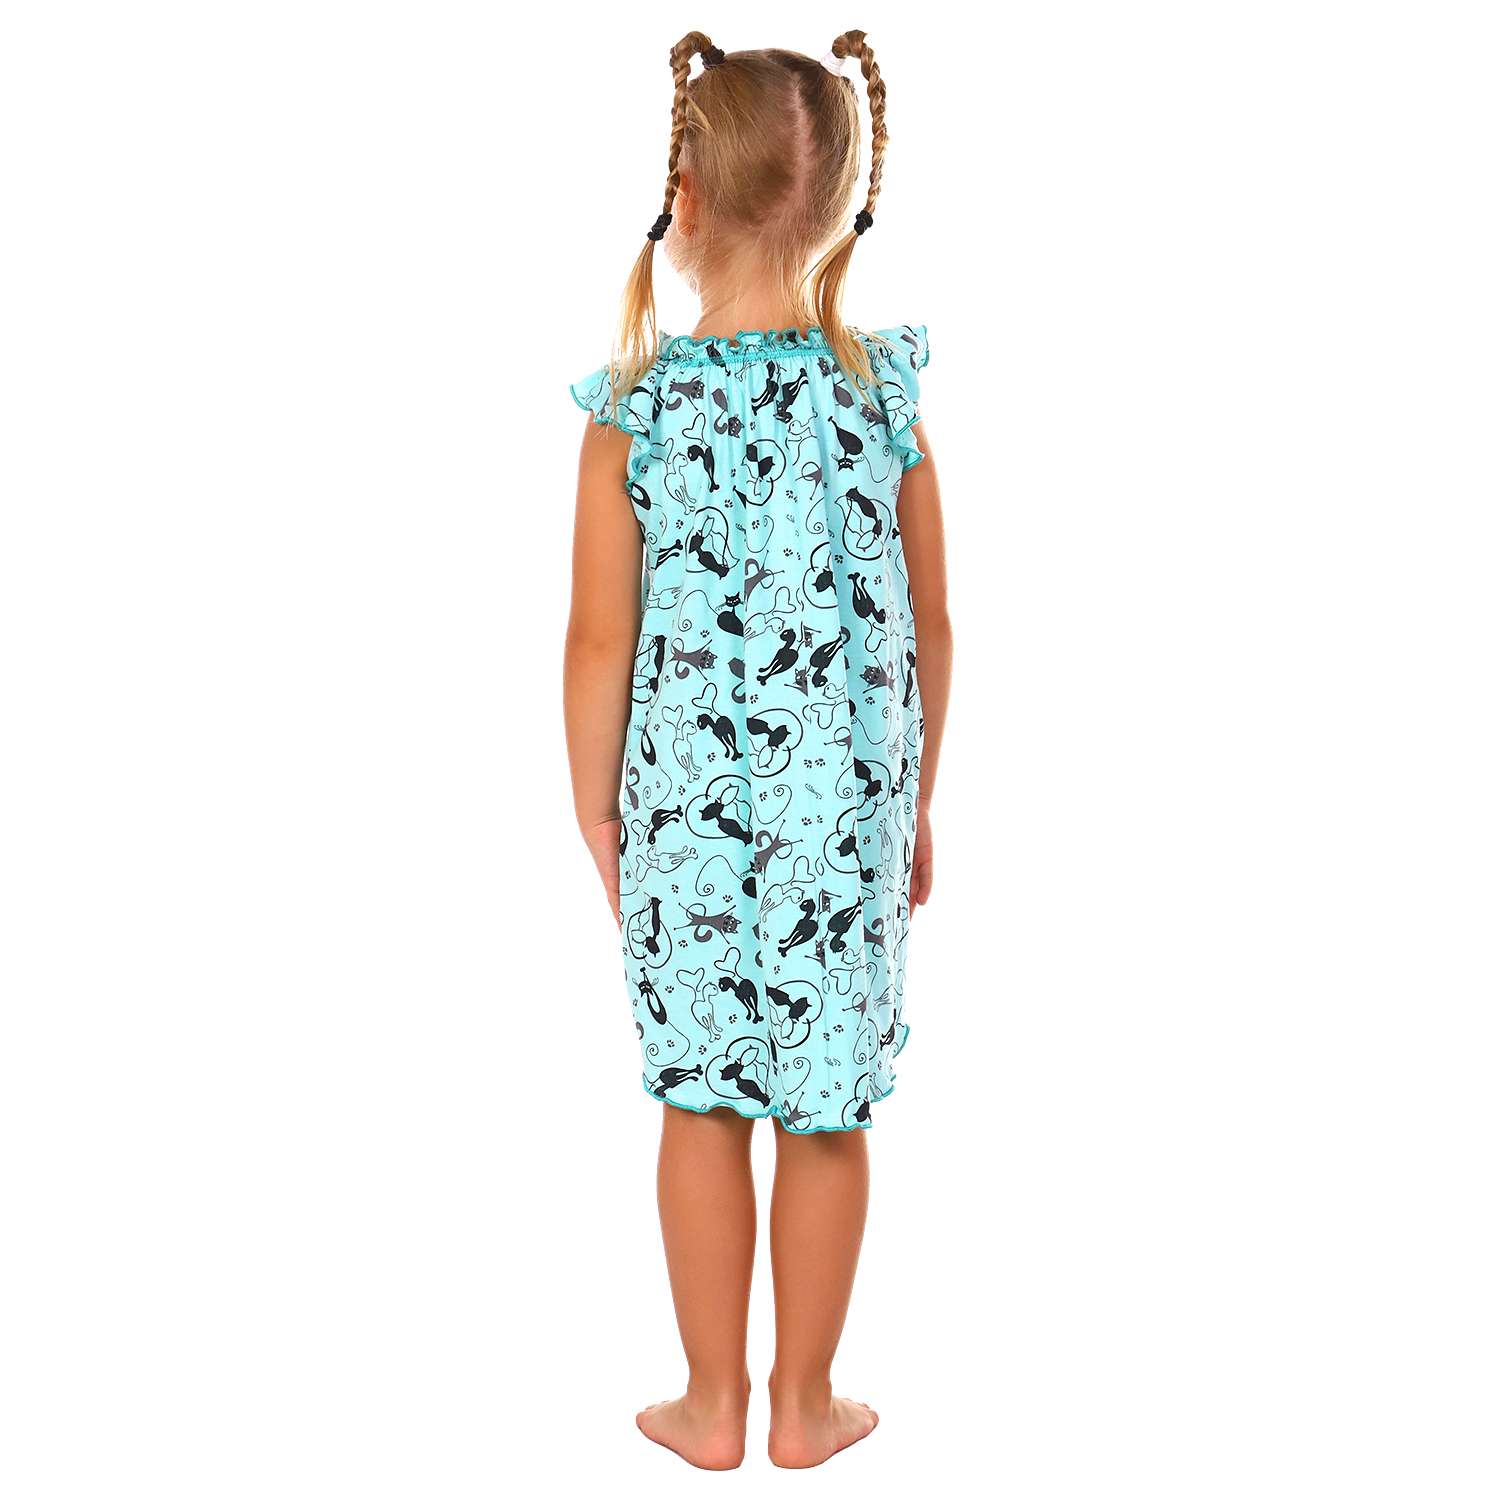 Сорочка ночная Детская Одежда 0003К/мятный8 - фото 4